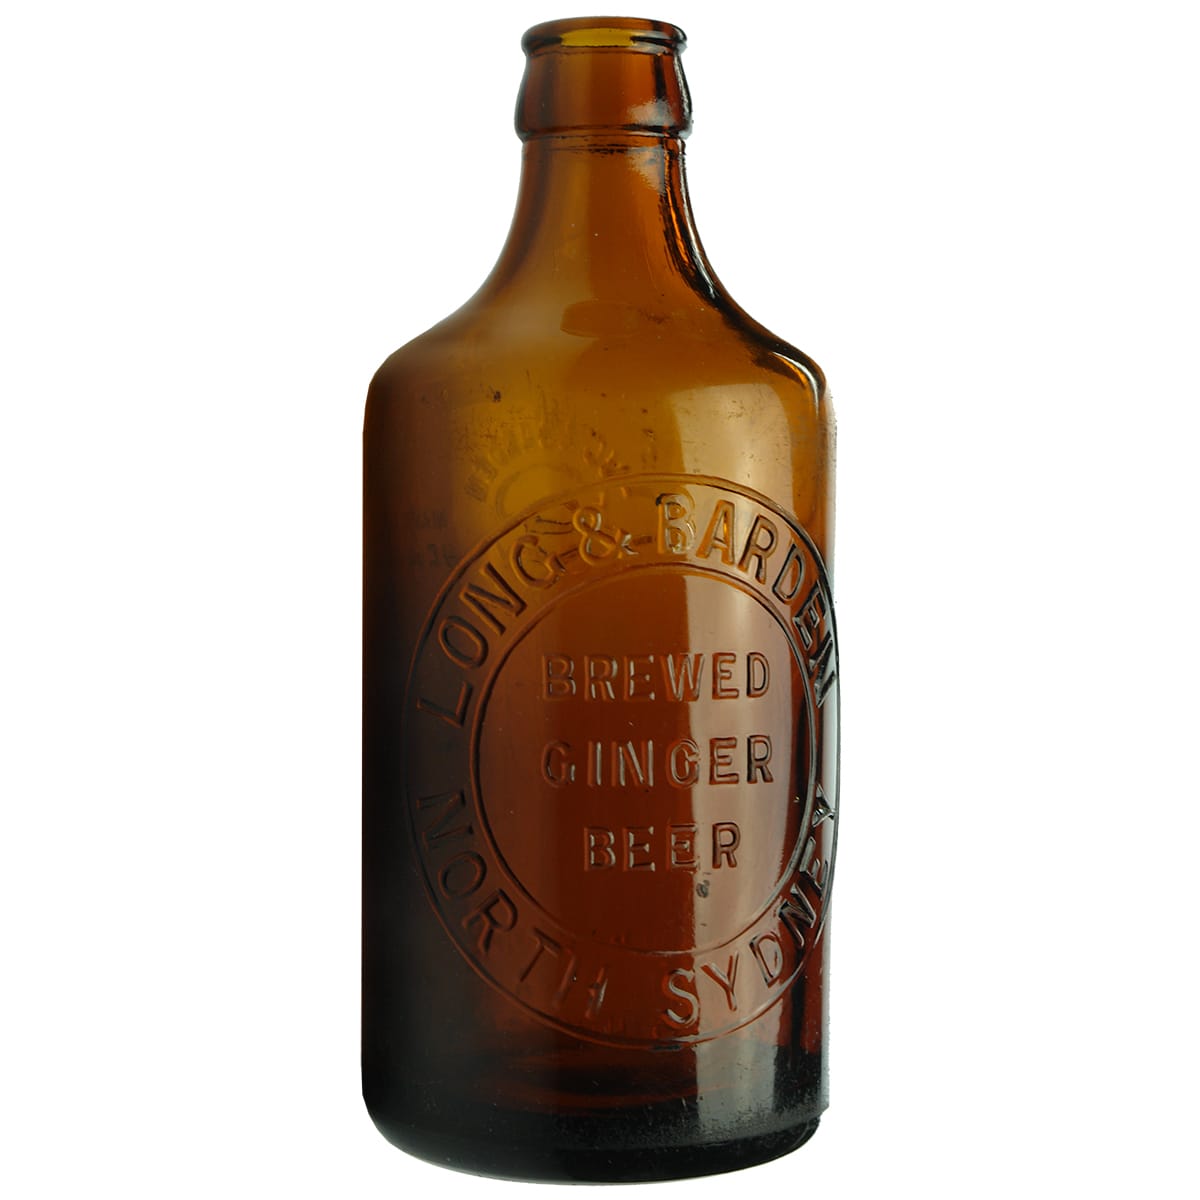 Ginger Beer. Long & Barden, North Sydney. Amber Glass. 10 oz.